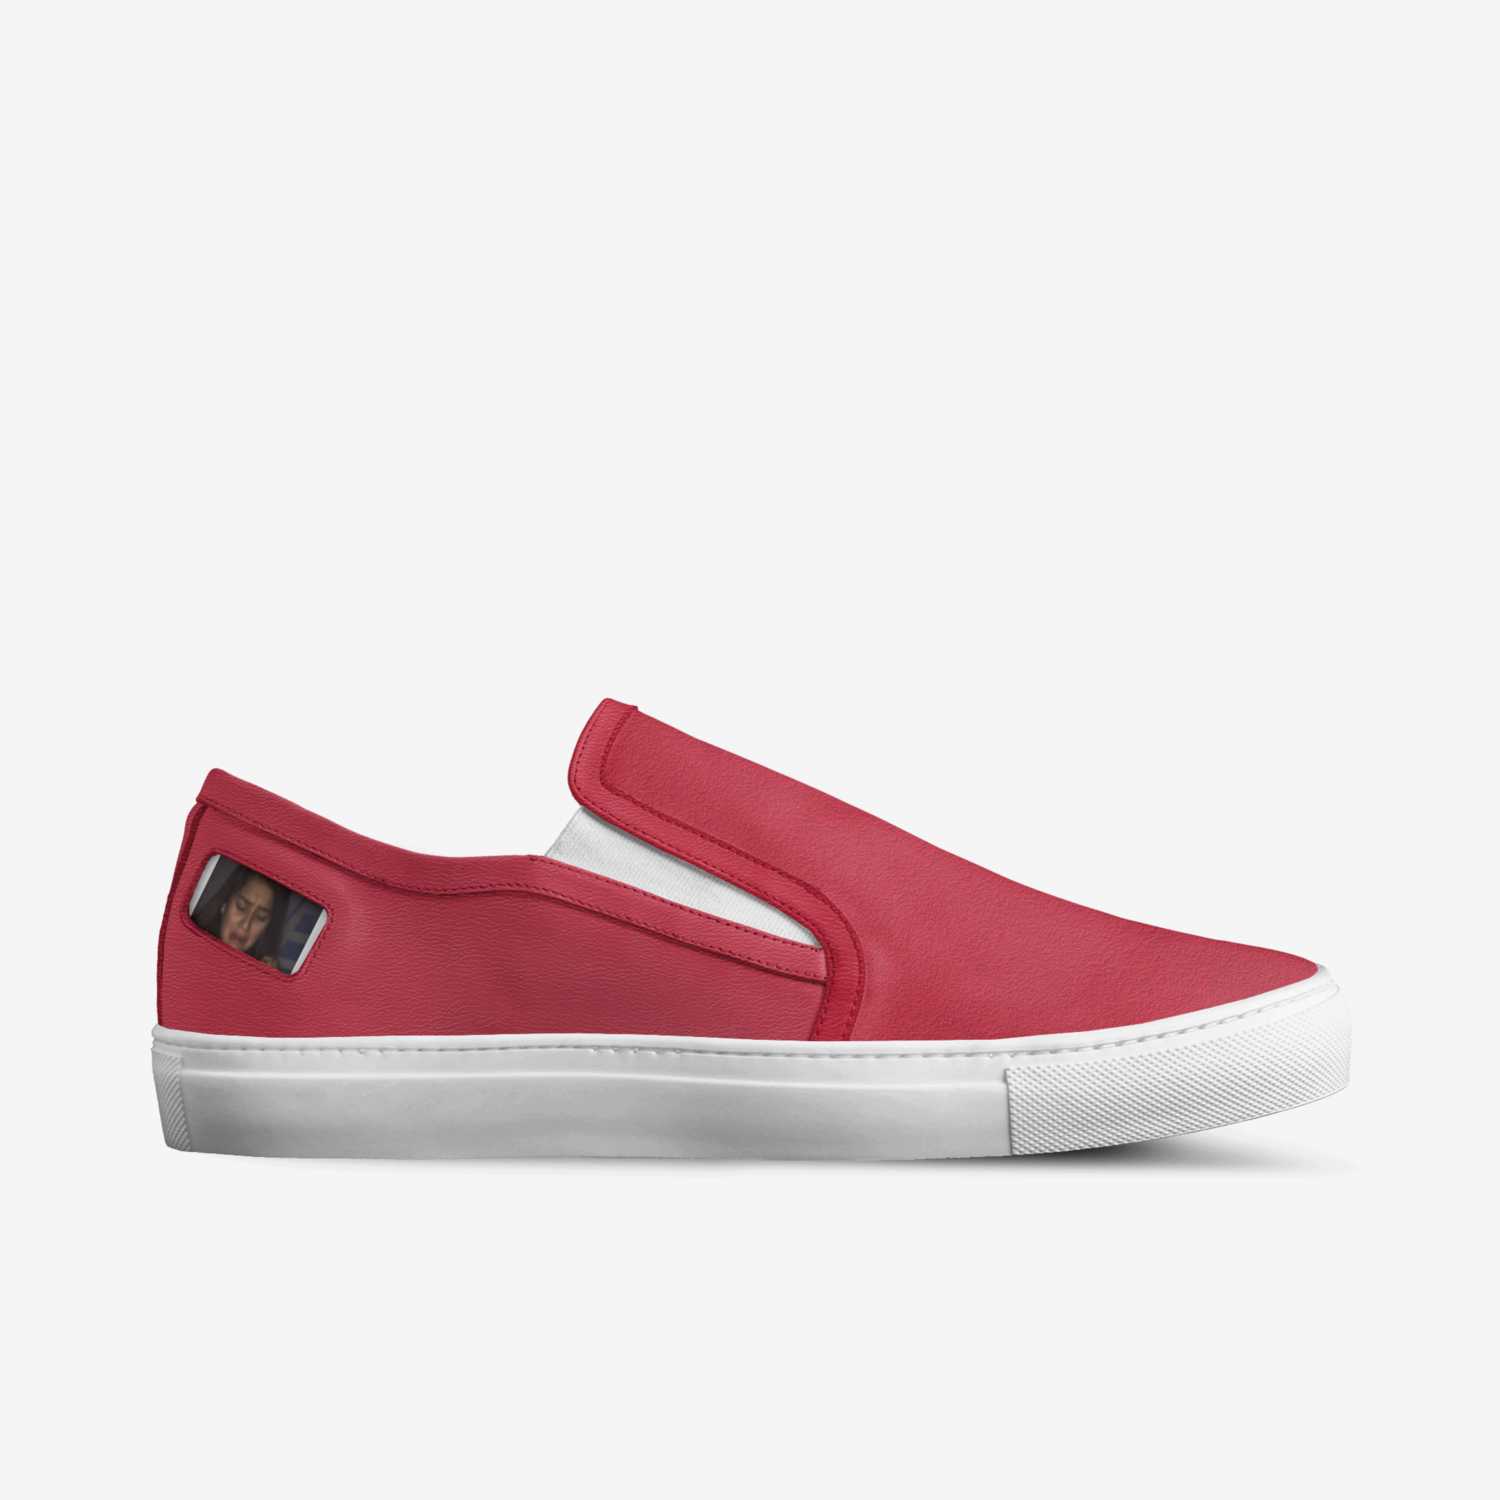 Lulk | A Custom Shoe concept by Karla Vela